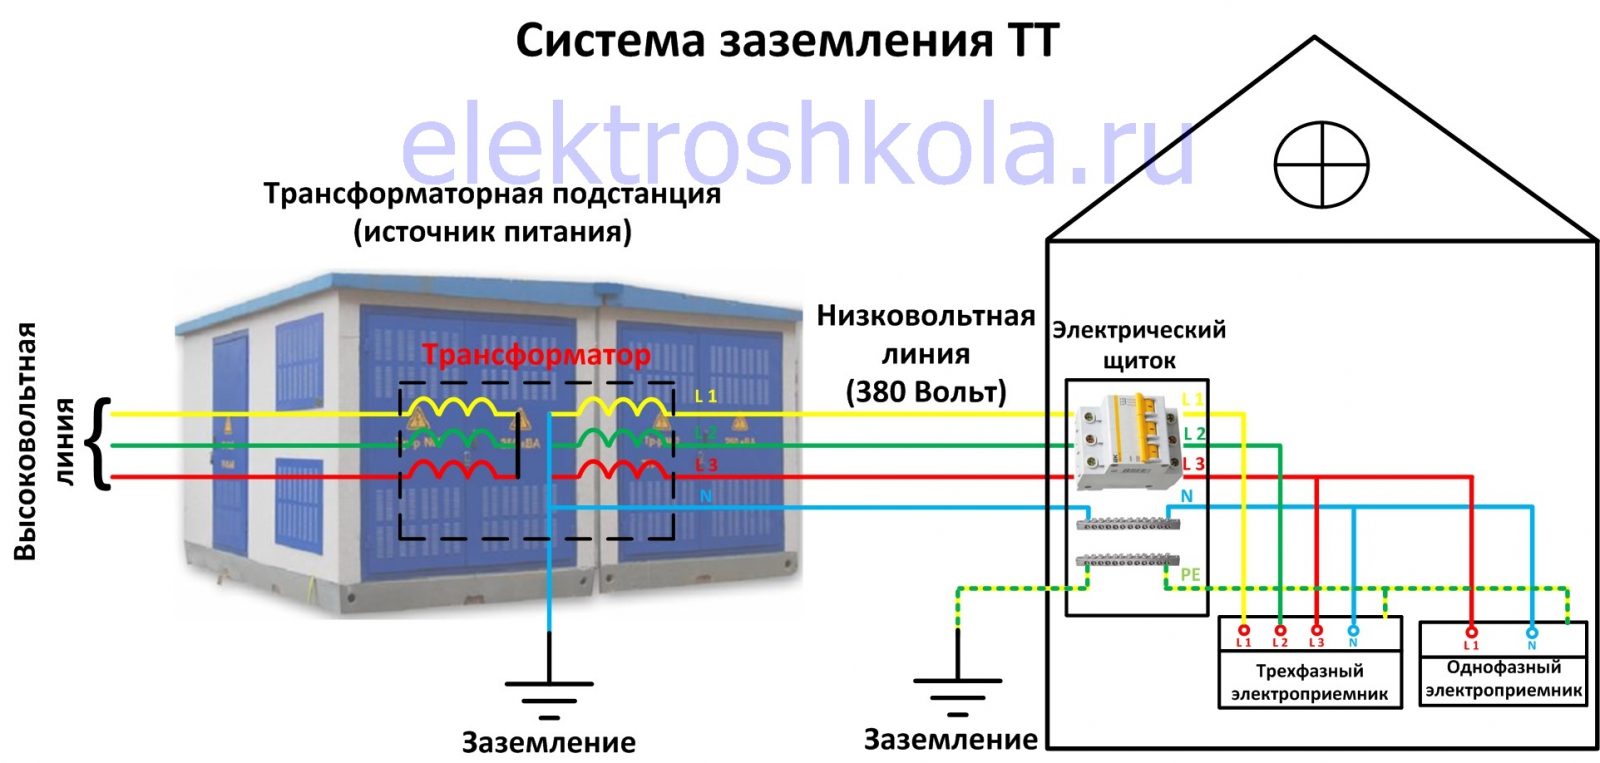 Система заземления tt: схема, основные особенности и сферы применения